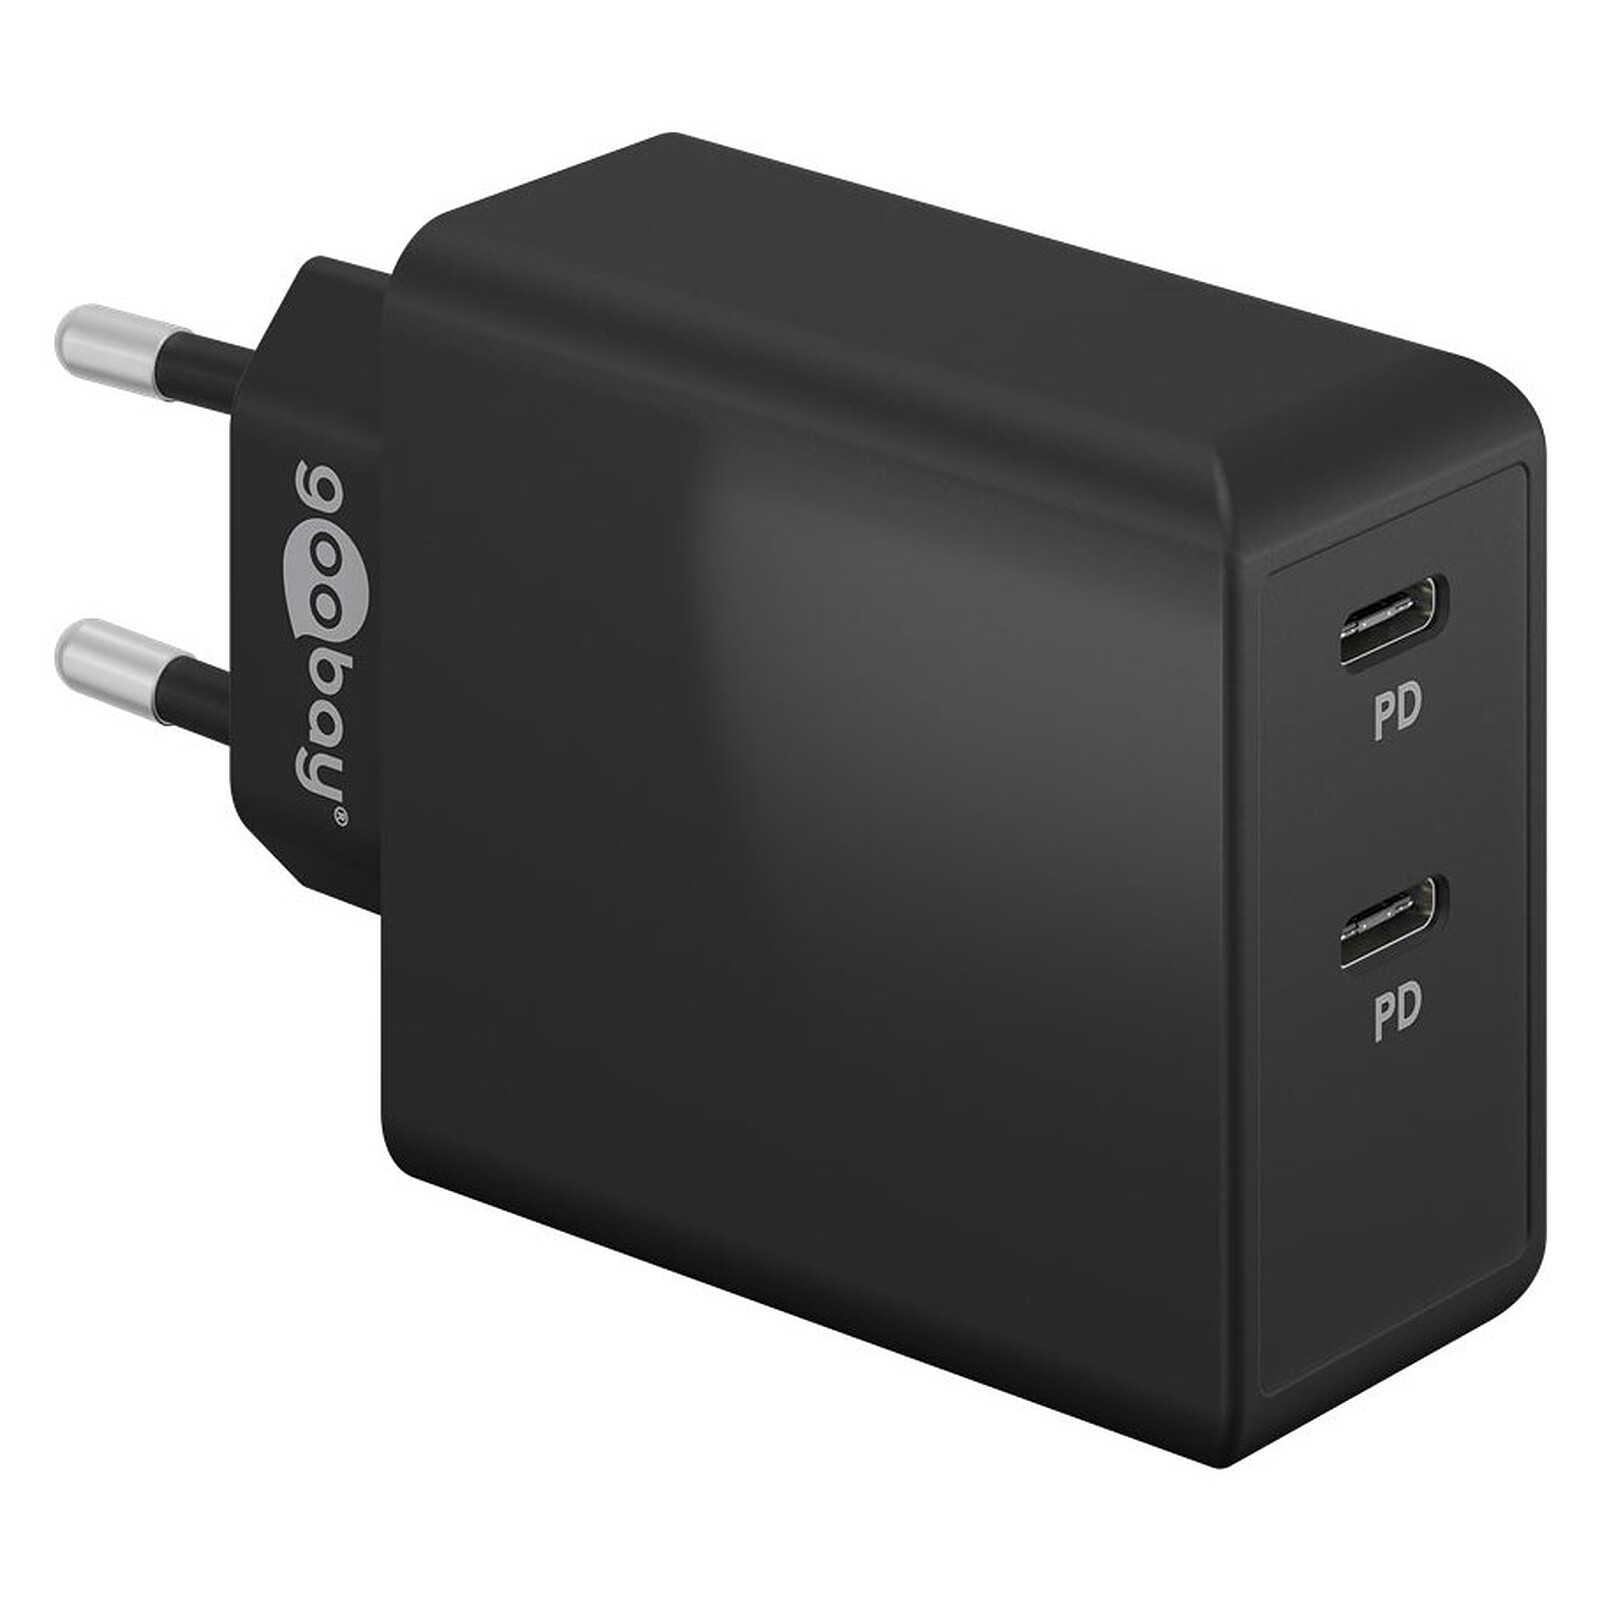 Double chargeur USB 5V 2.4A charge rapide adaptateur de chargeur